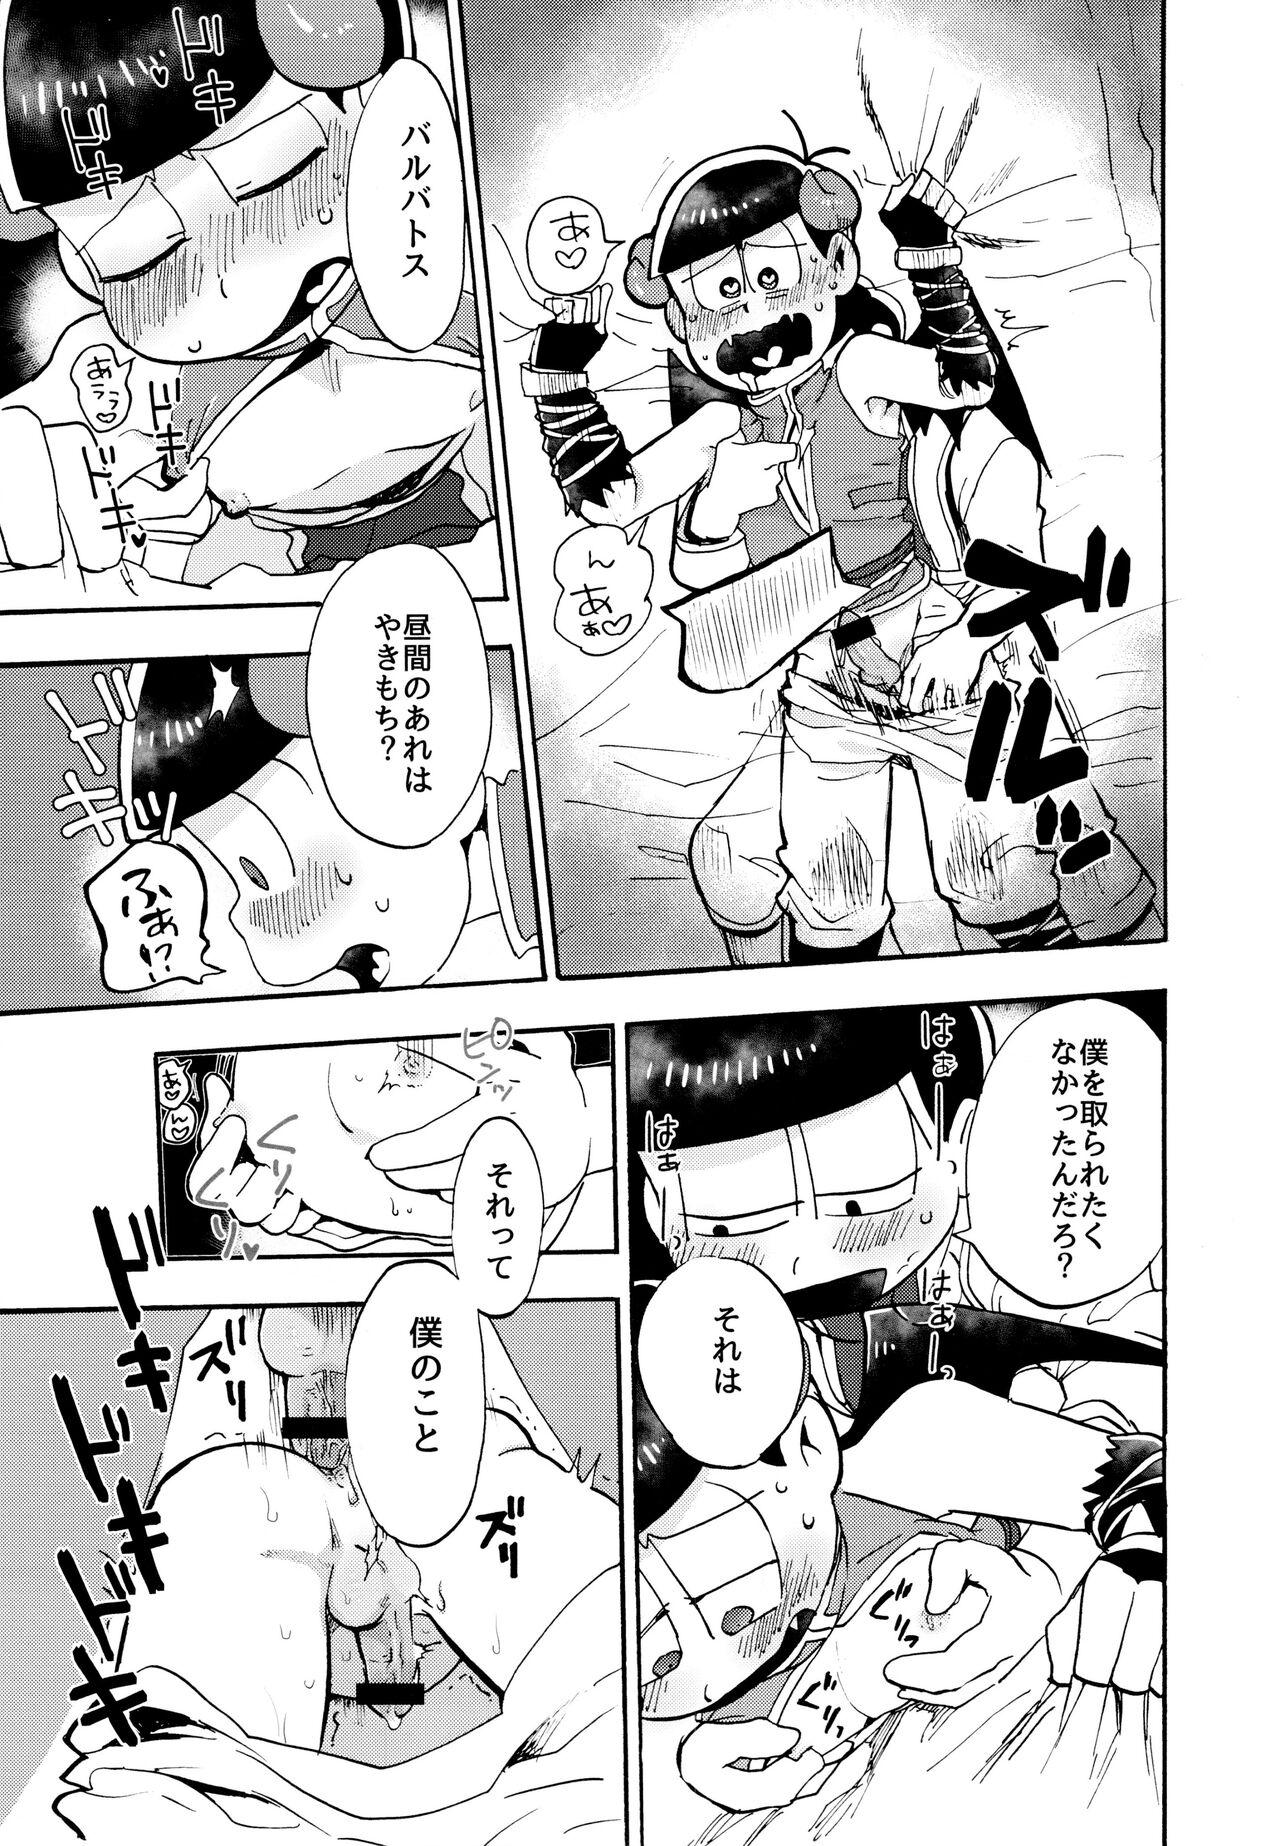 Cousin Hoshi no Kioku 2 - Osomatsu-san Hungarian - Page 10